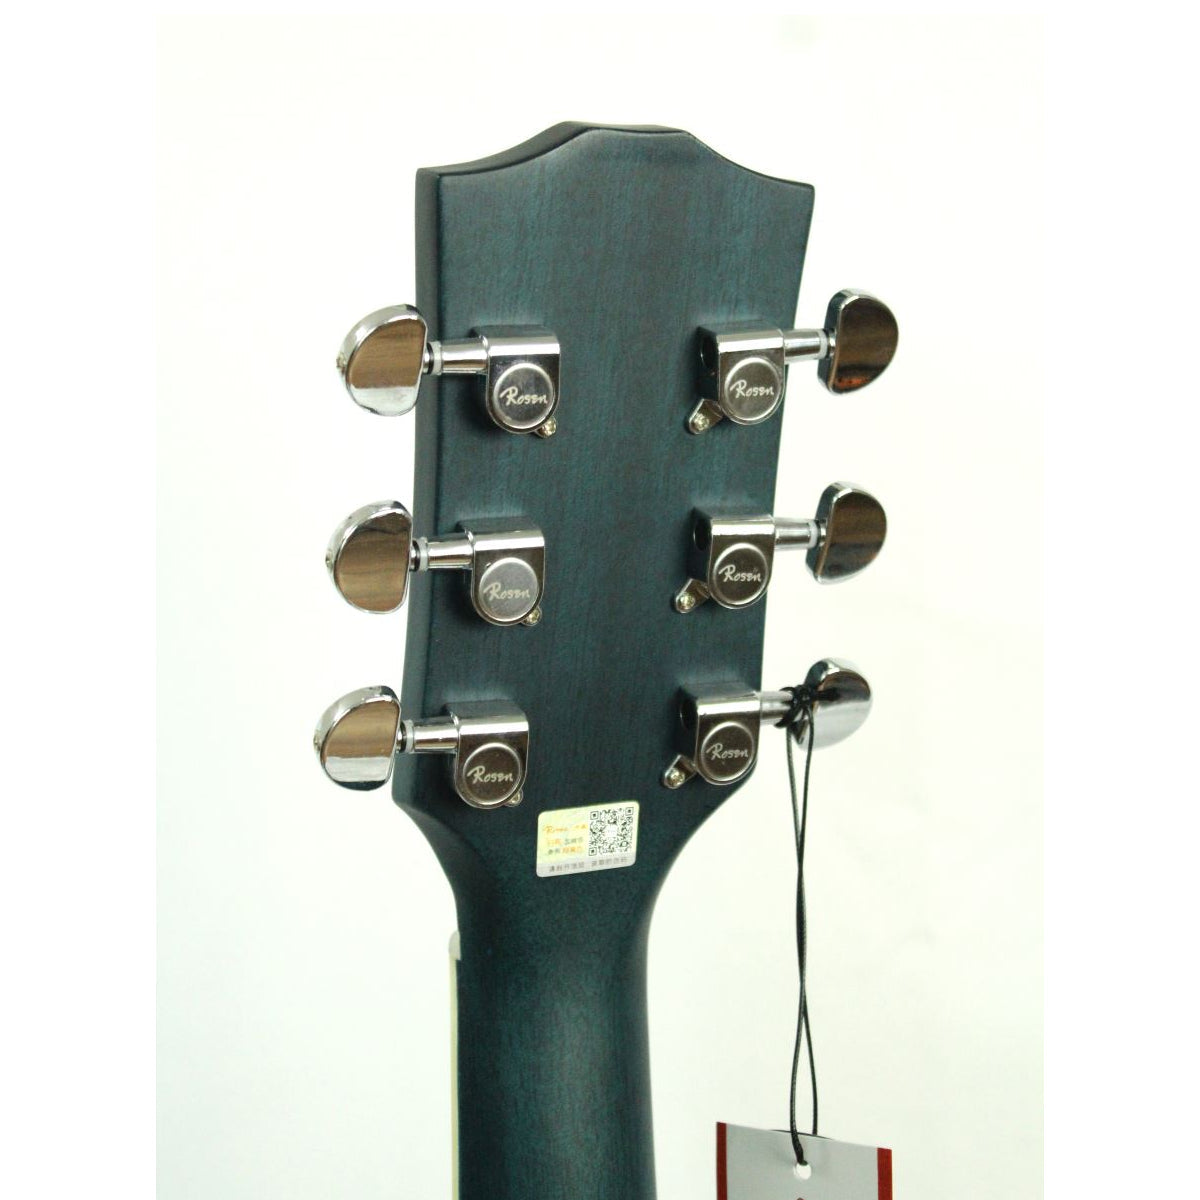 Đàn Guitar Acoustic Rosen G11SC (Full phụ kiện)-Việt Music